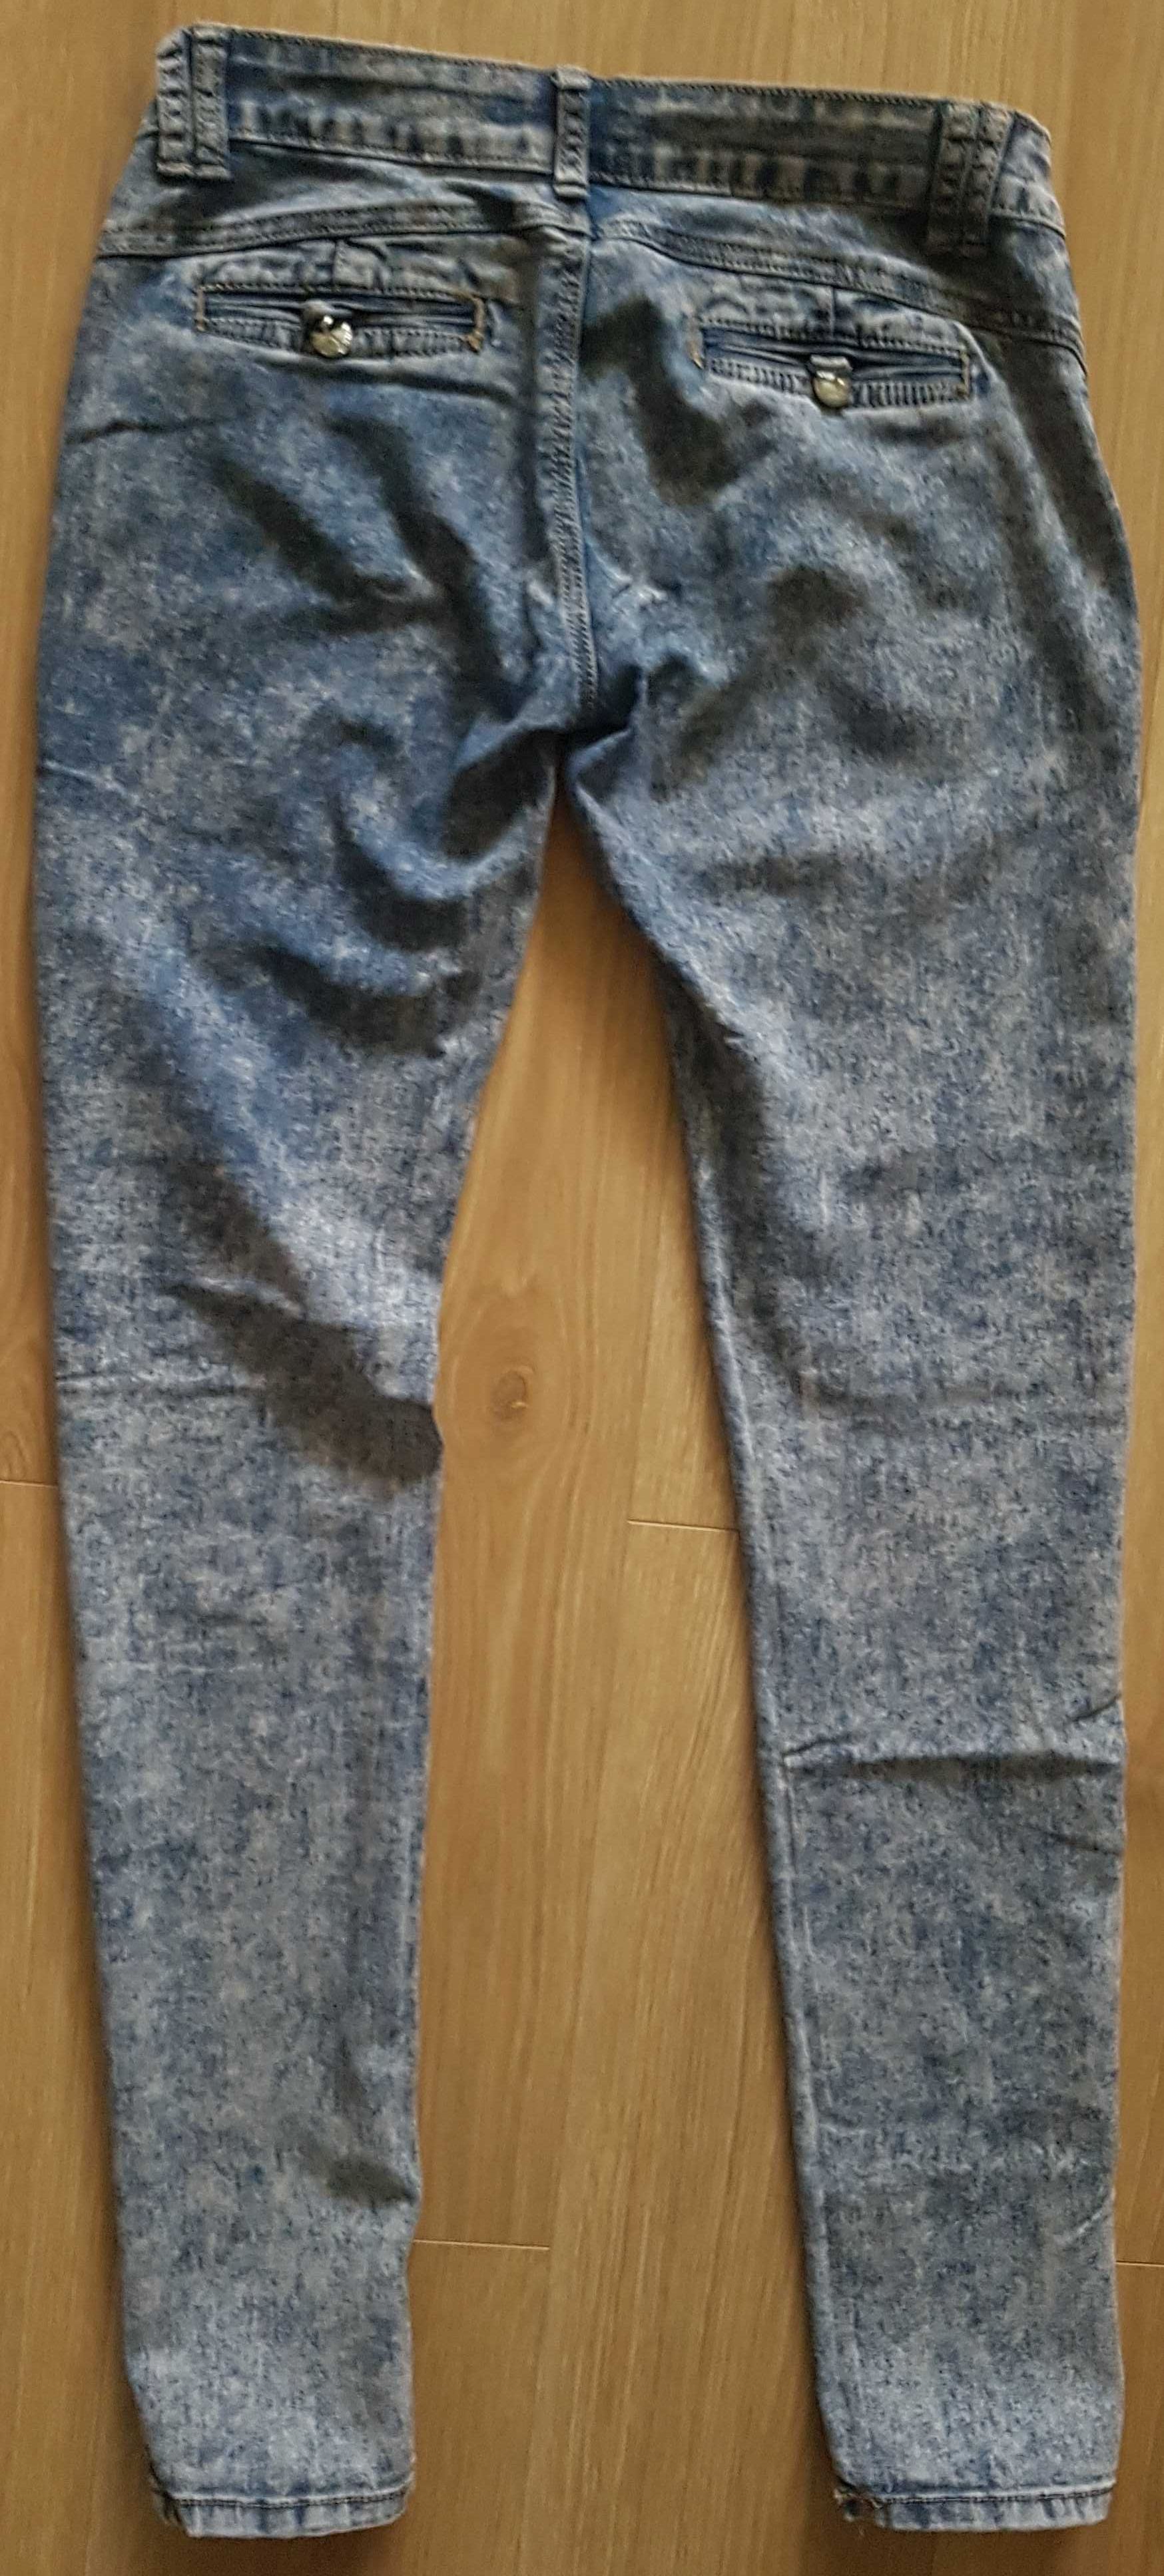 Spodnie jeansowe rozmiar 28 bawełna, elastan